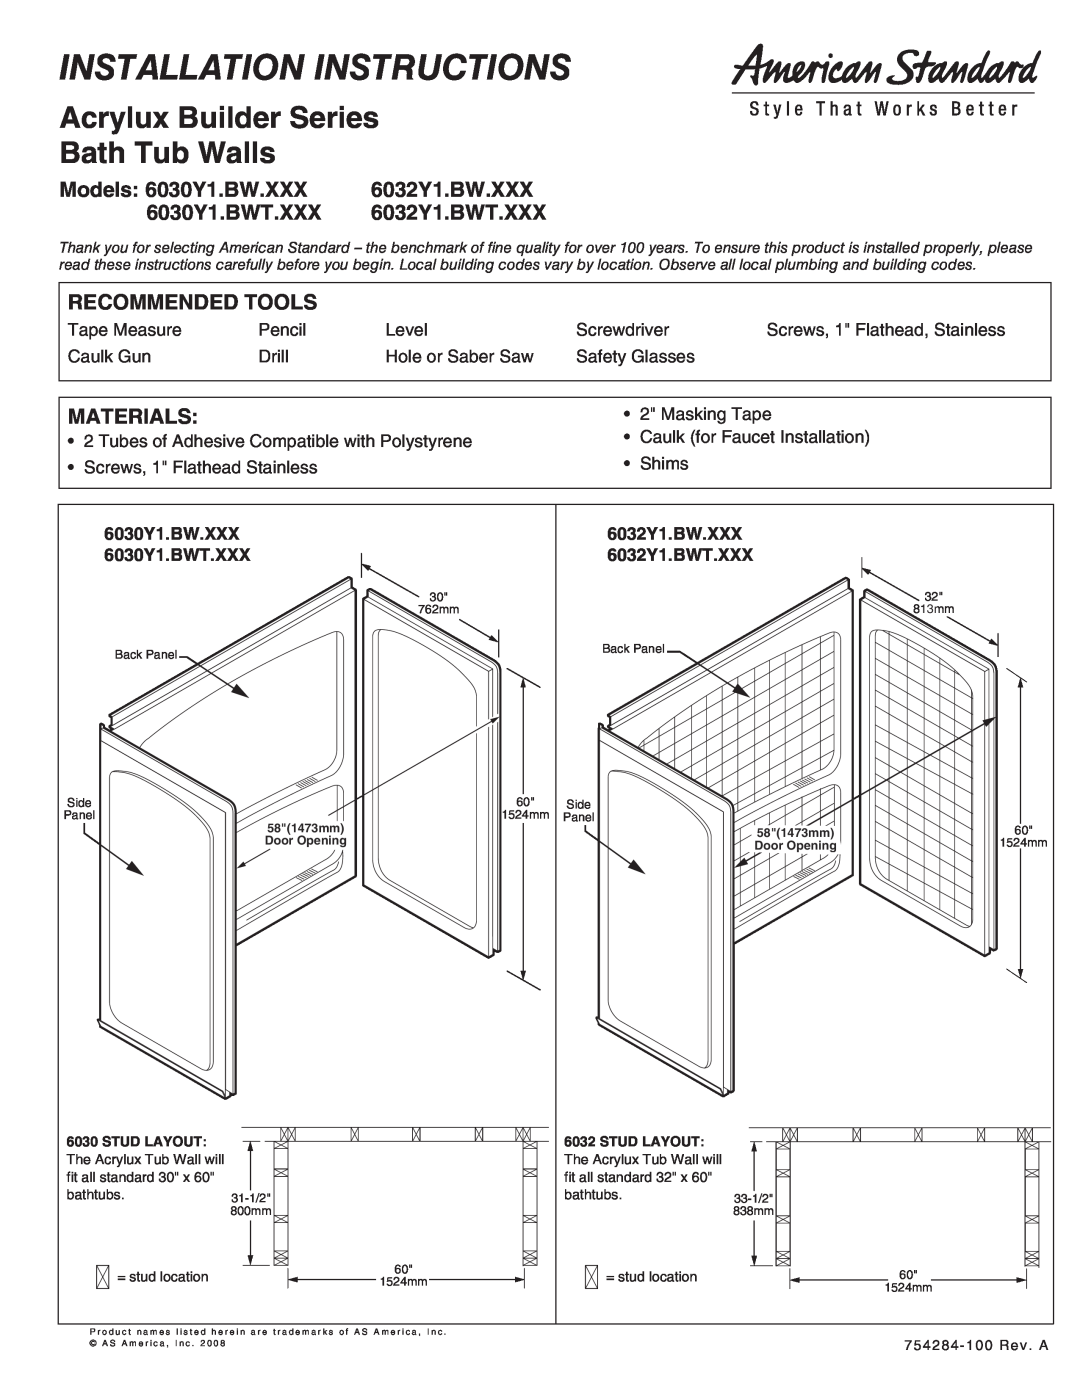 American Standard 6032Y1.BW.XXX installation instructions Models 6030Y1.BW.XXX, 6030Y1.BWT.XXX, 6032Y1.BWT.XXX, Materials 